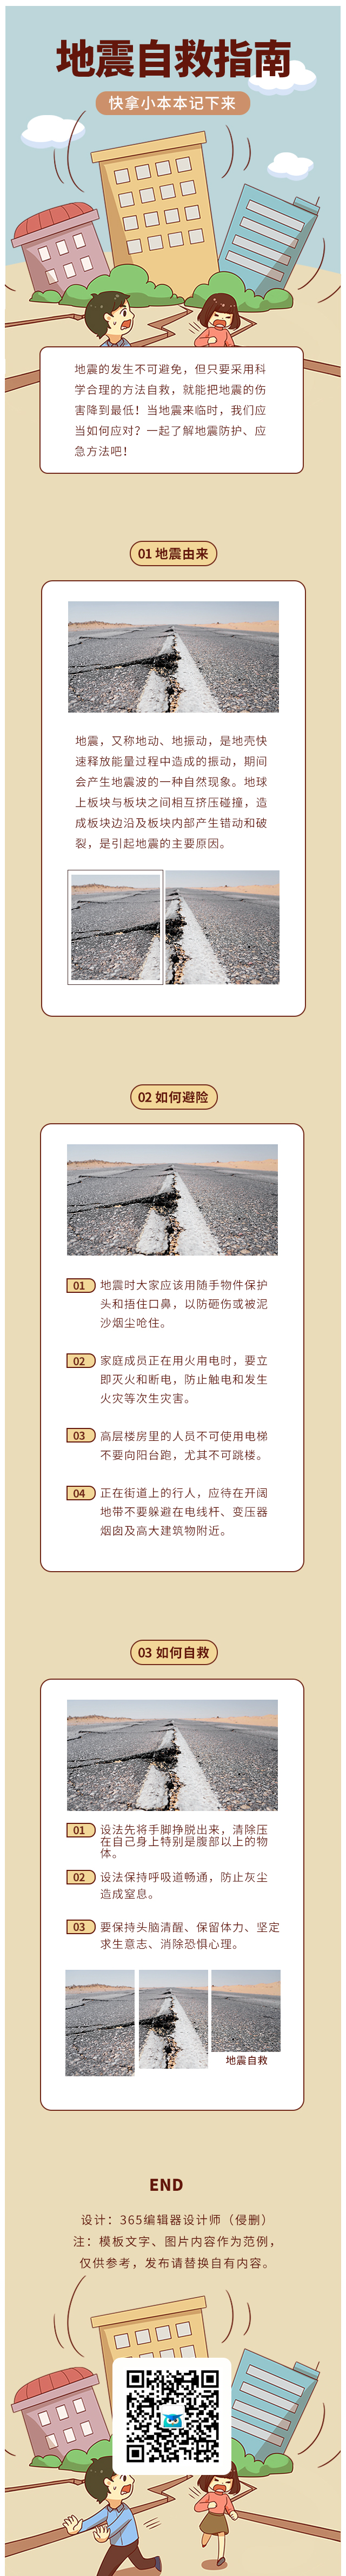 地震自救指南汶川地震简约黄色抗震减灾地震防护